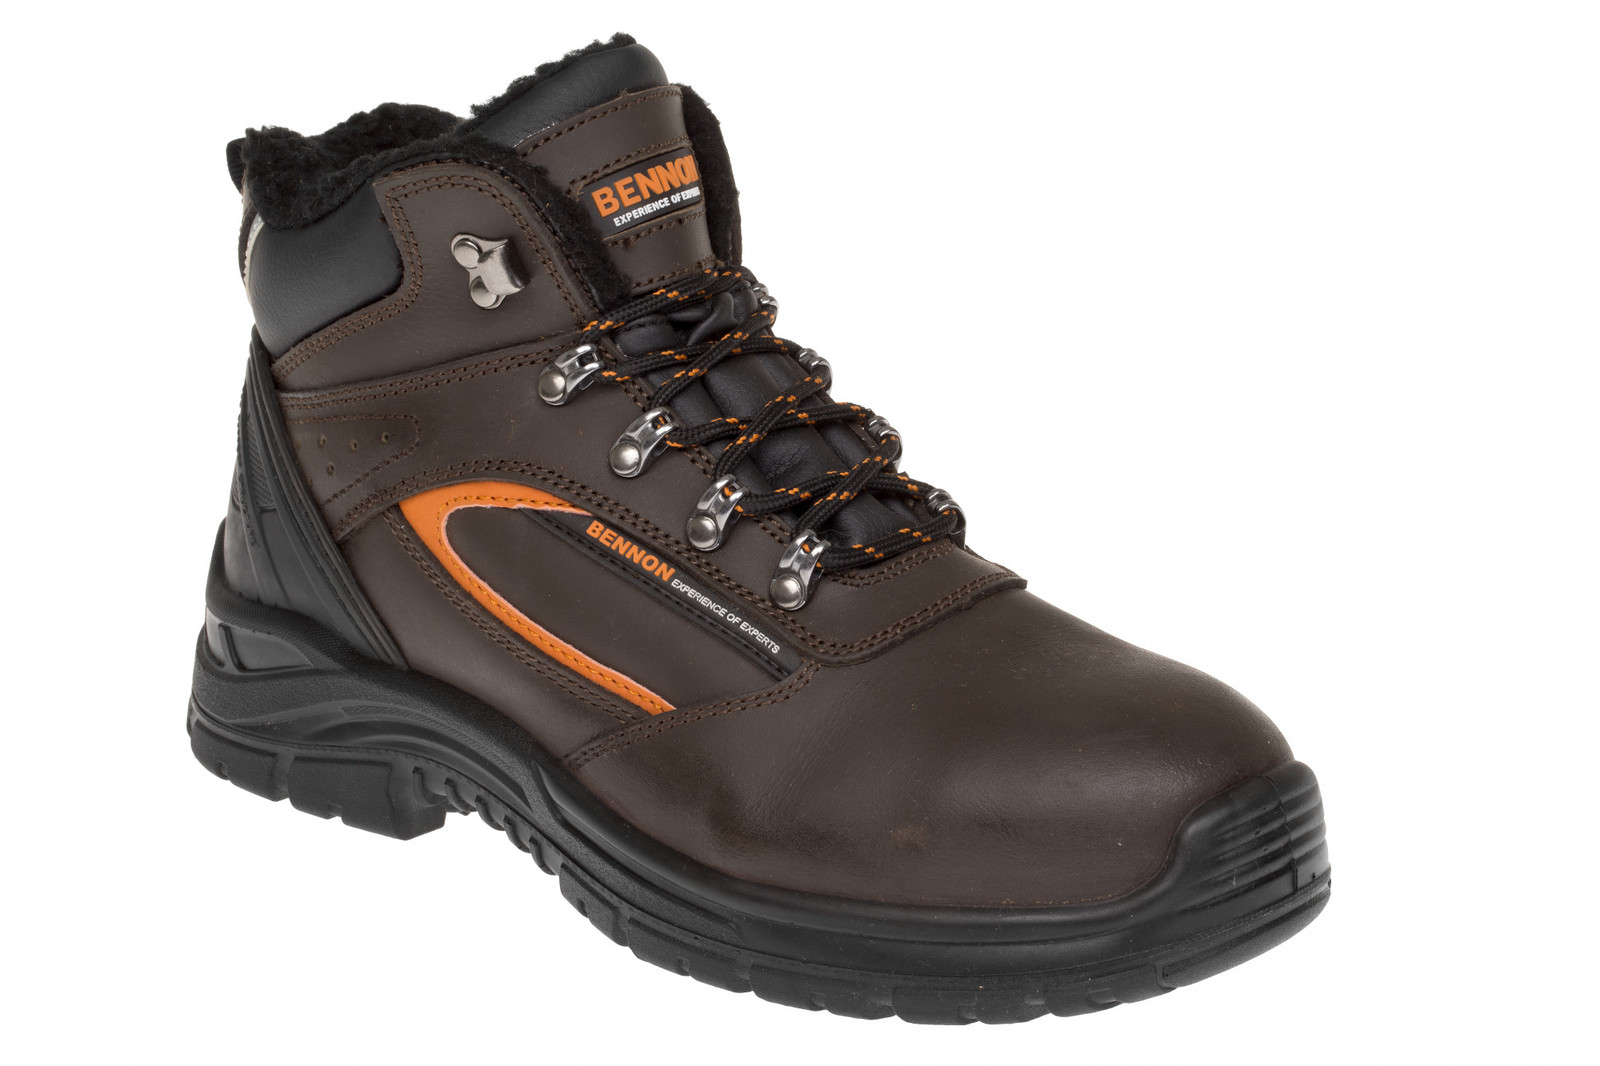 Zimná bezpečnostná obuv Bennon Farmis S3 Winter - veľkosť: 40, farba: hnedá